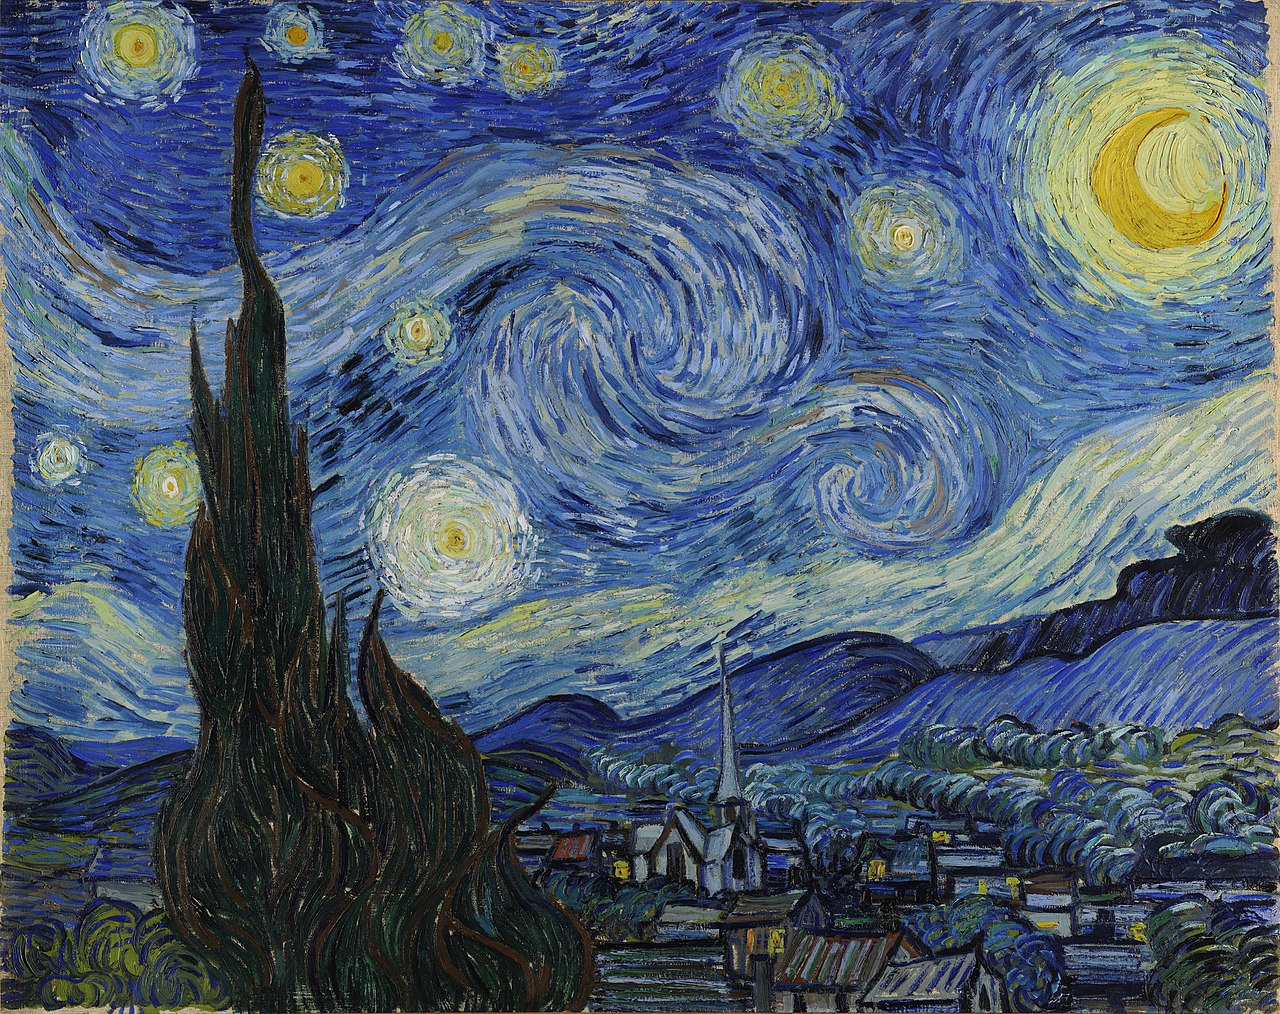 L'immagine raffigura la Starry Night di Van Gogh